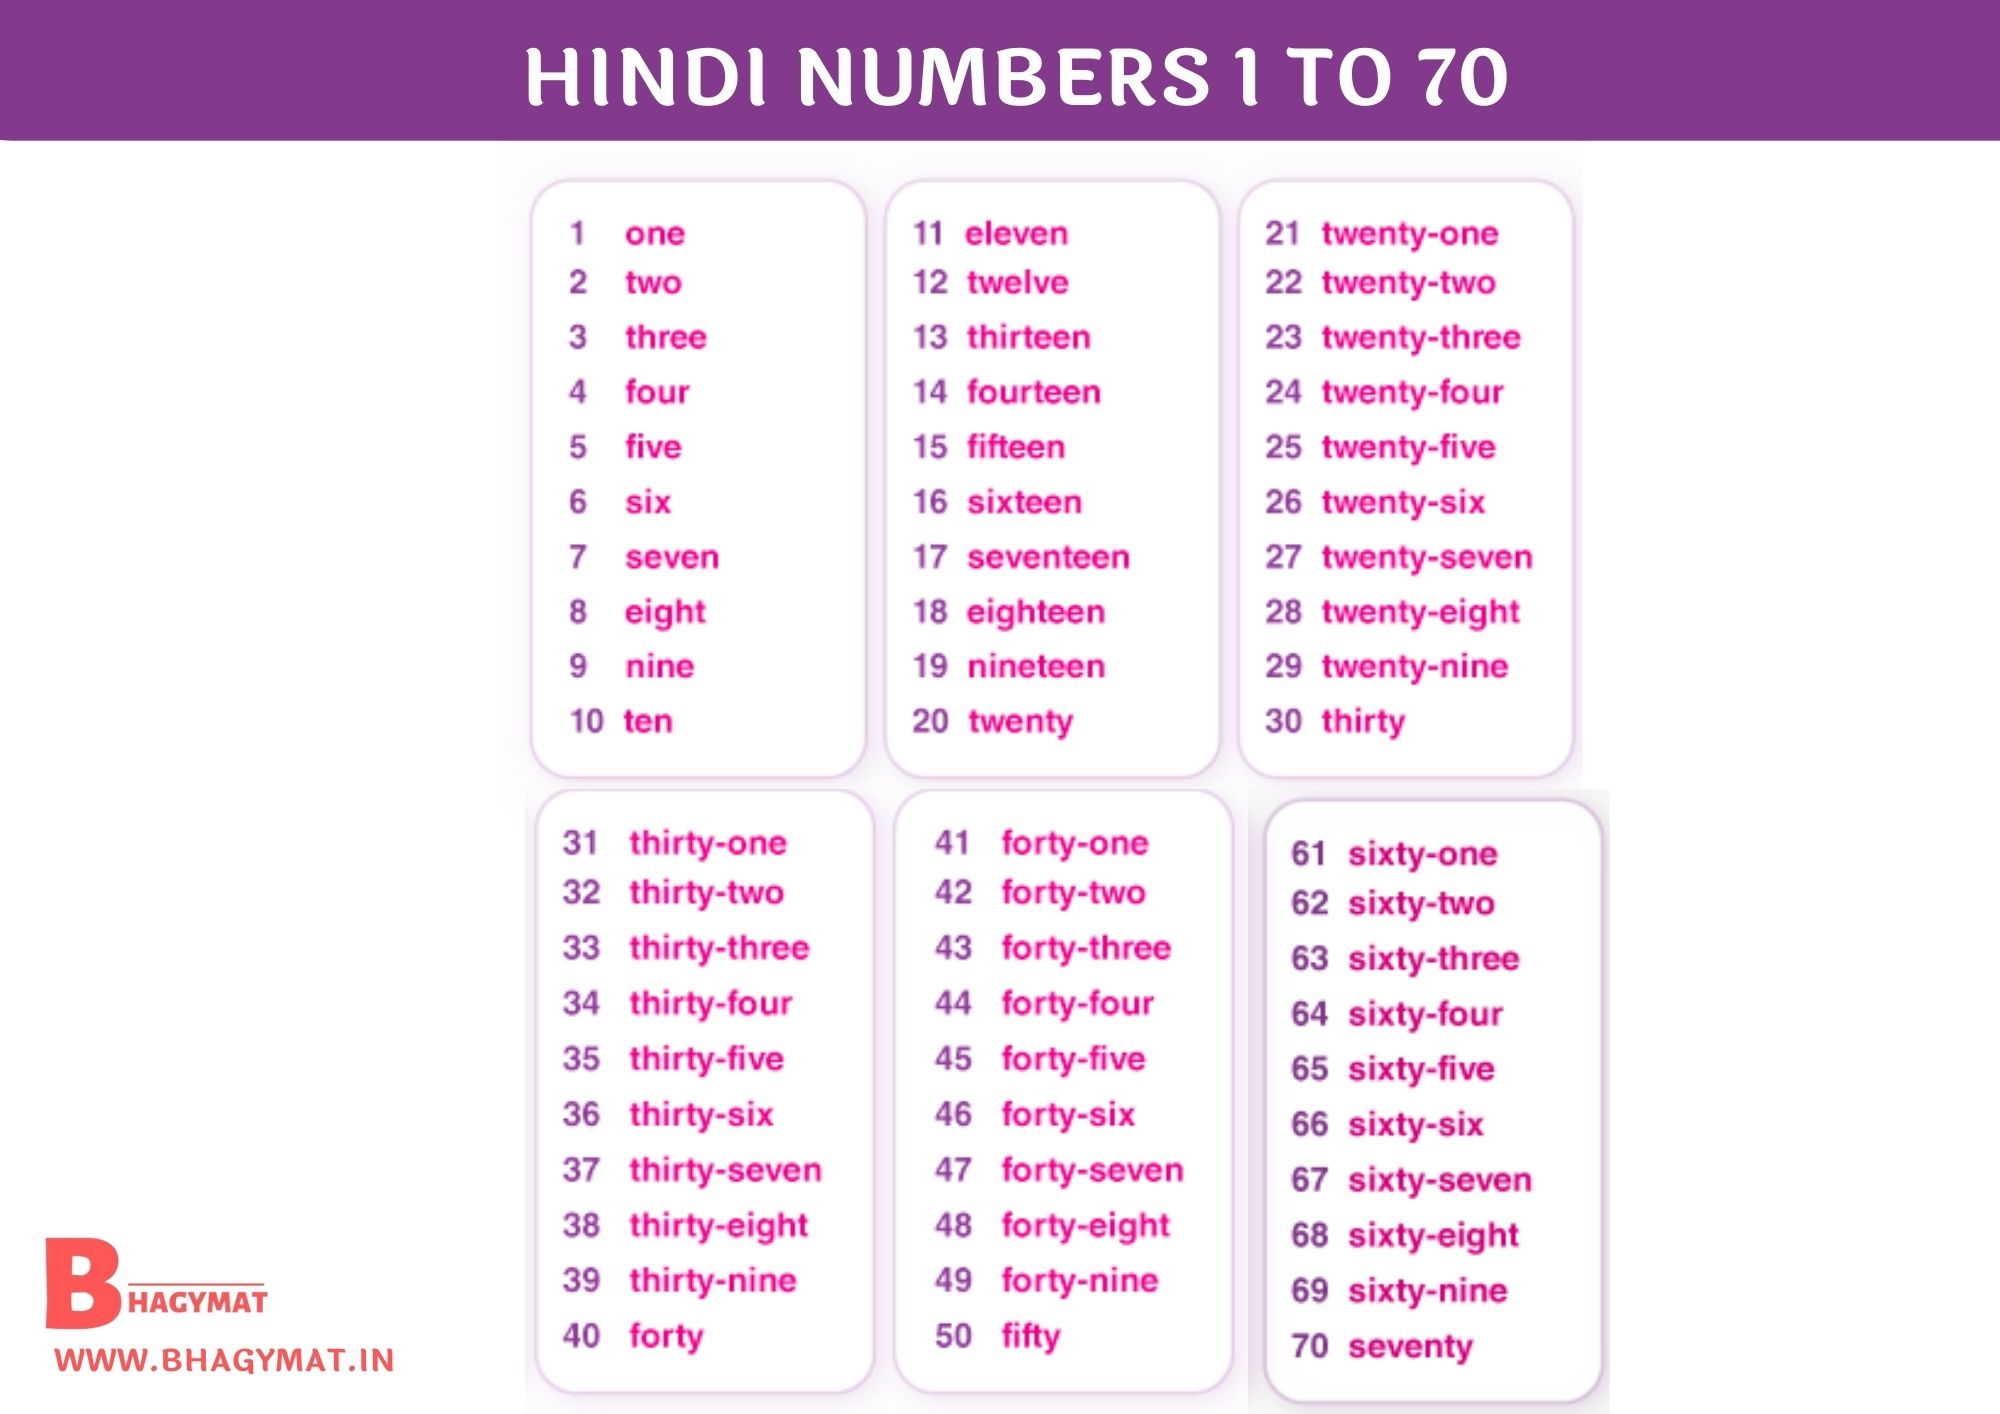 Hindi Numbers 1 To 70 | 1 To 70 Numbers In Hindi | Hindi Numbers 1-70 | Numbers Hindi 1 To 70 | 1 To 70 Hindi Numbers